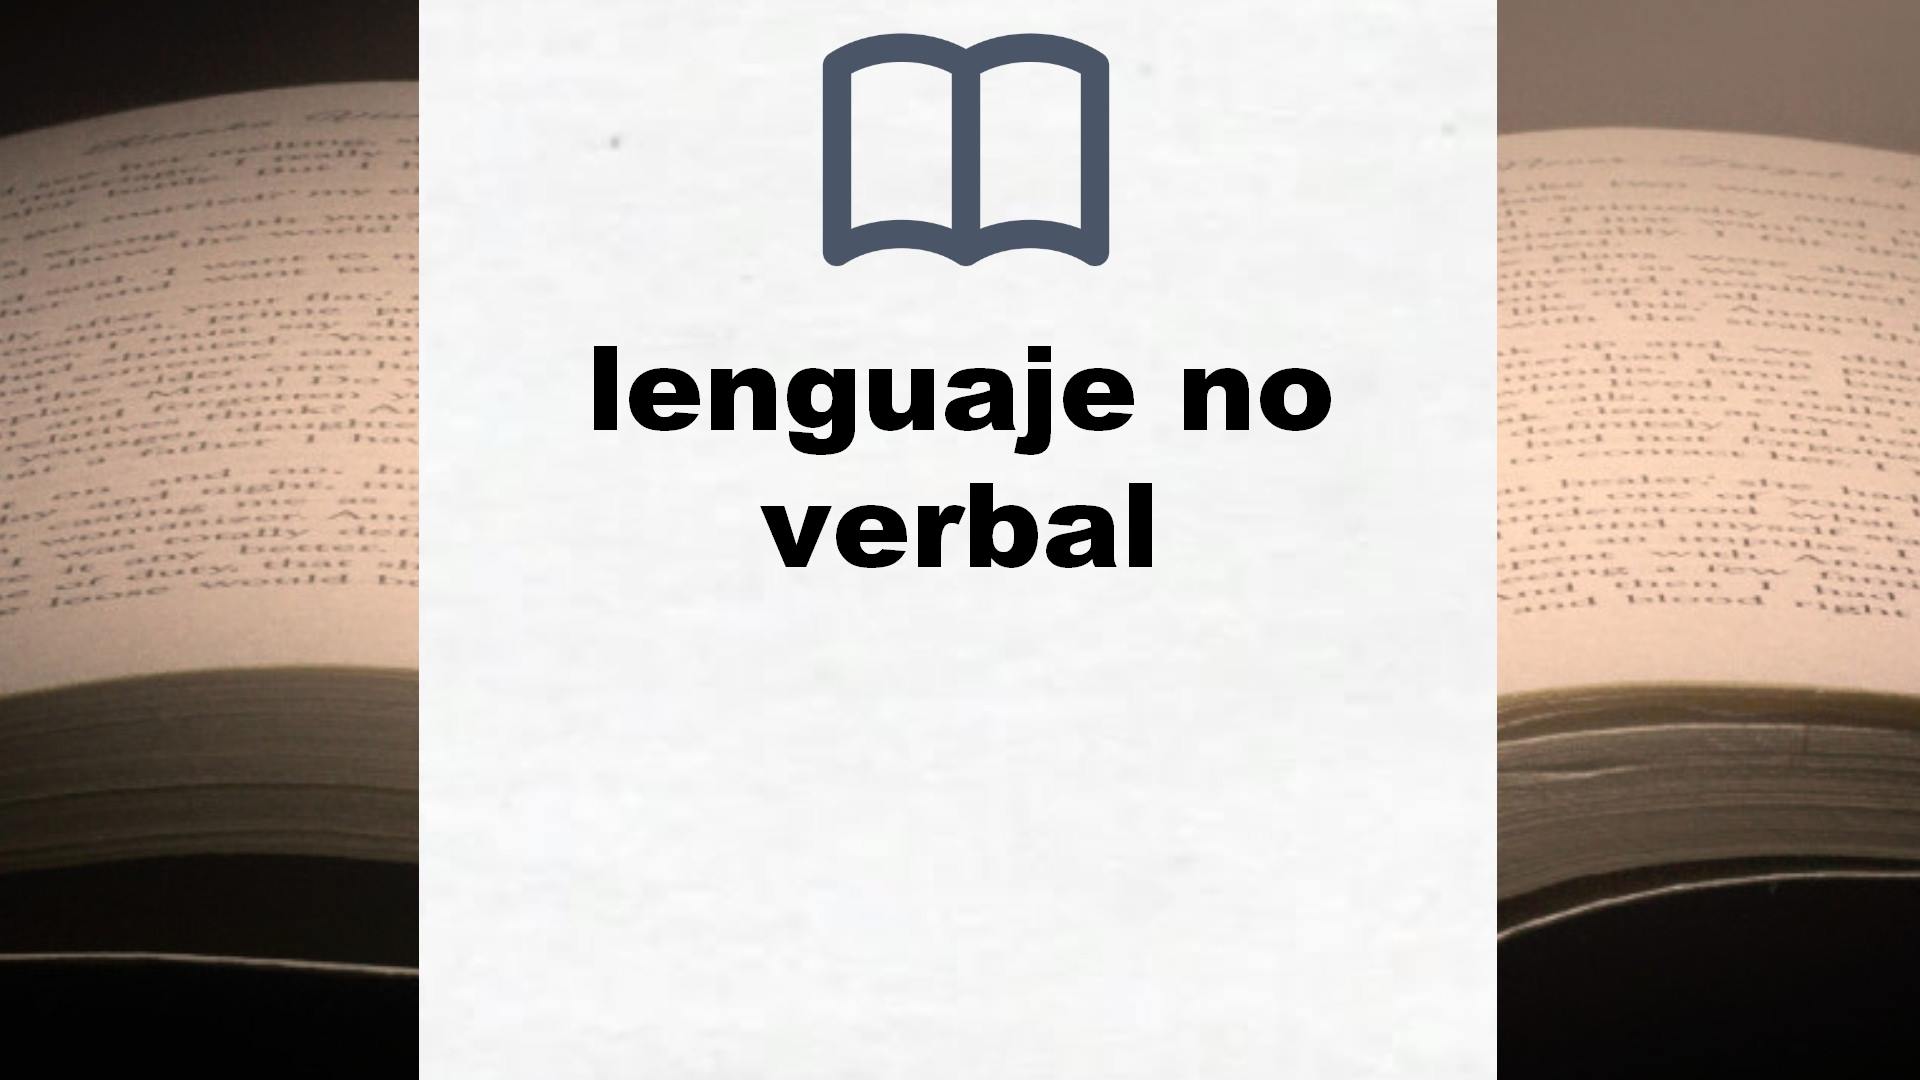 Libros sobre lenguaje no verbal